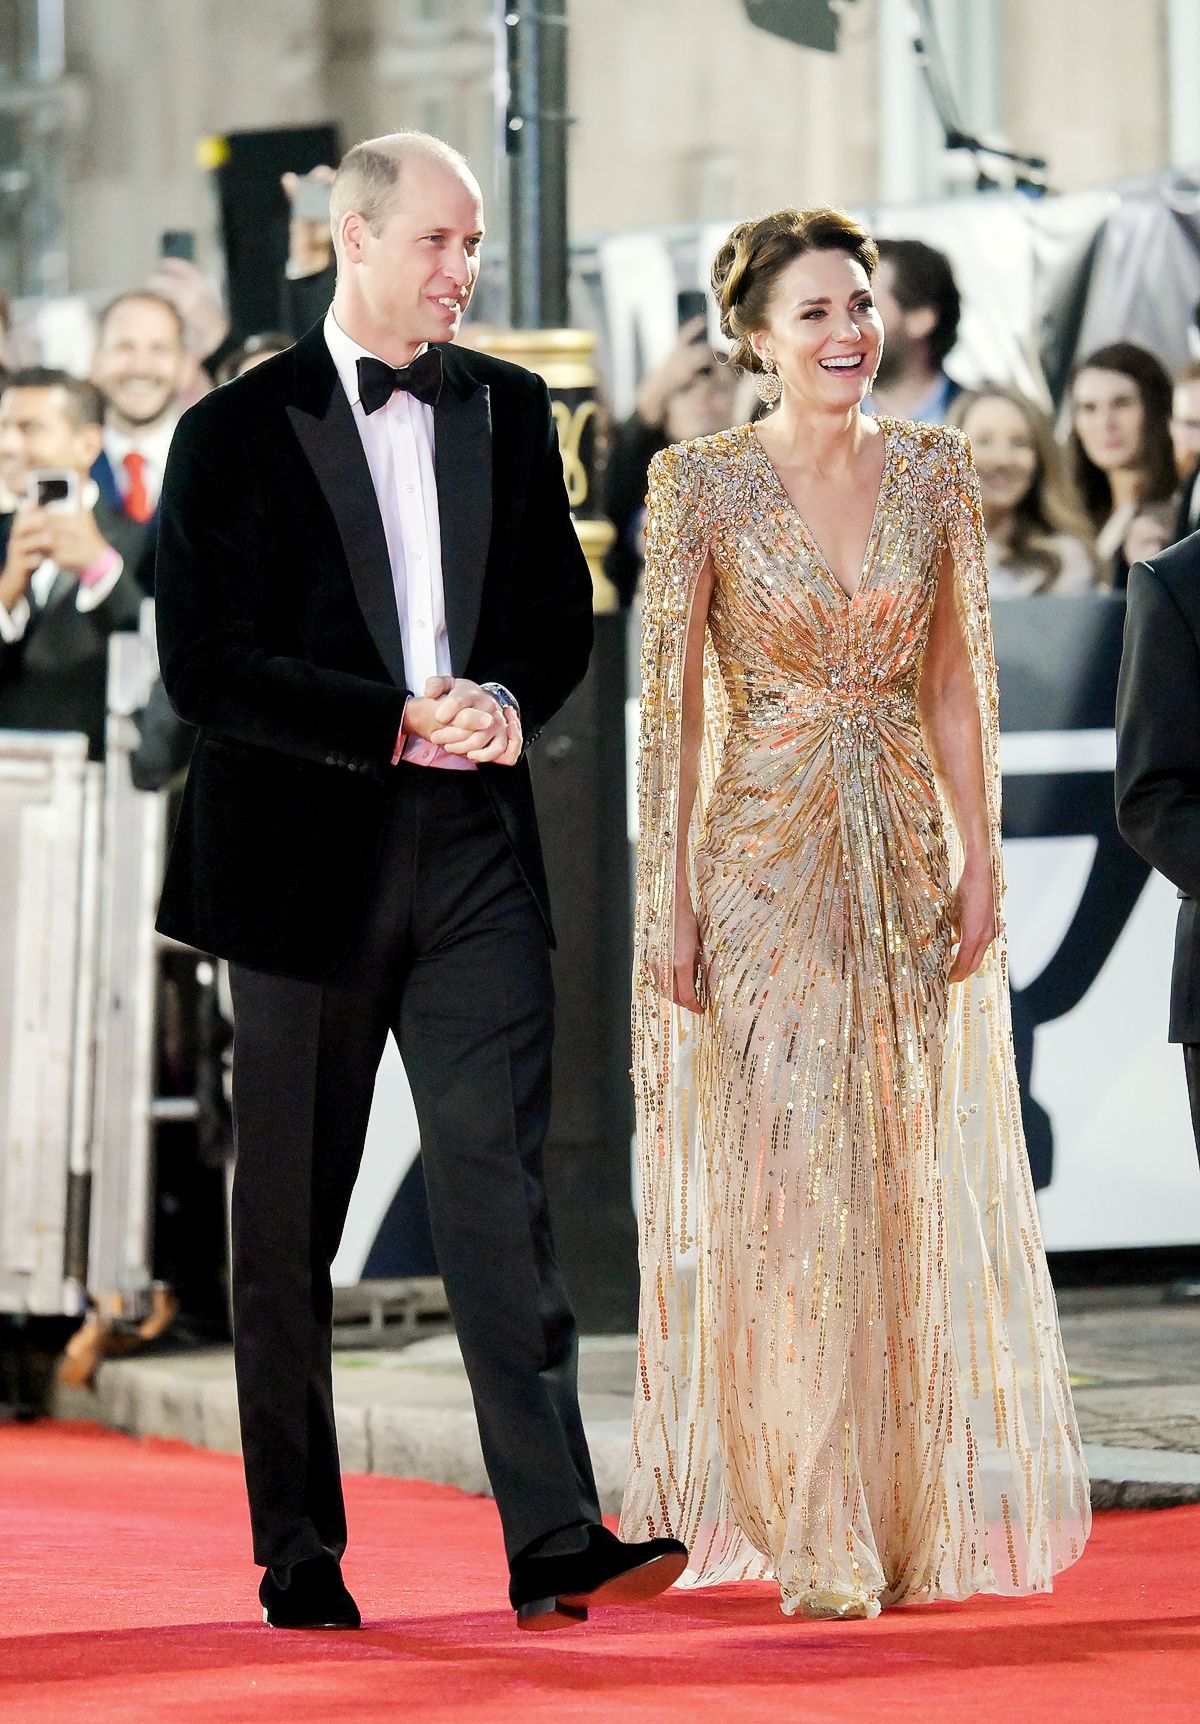 Принц Уильям, Кейт Миддлтон на мировой премьере фильма «Не время умирать», фото 2